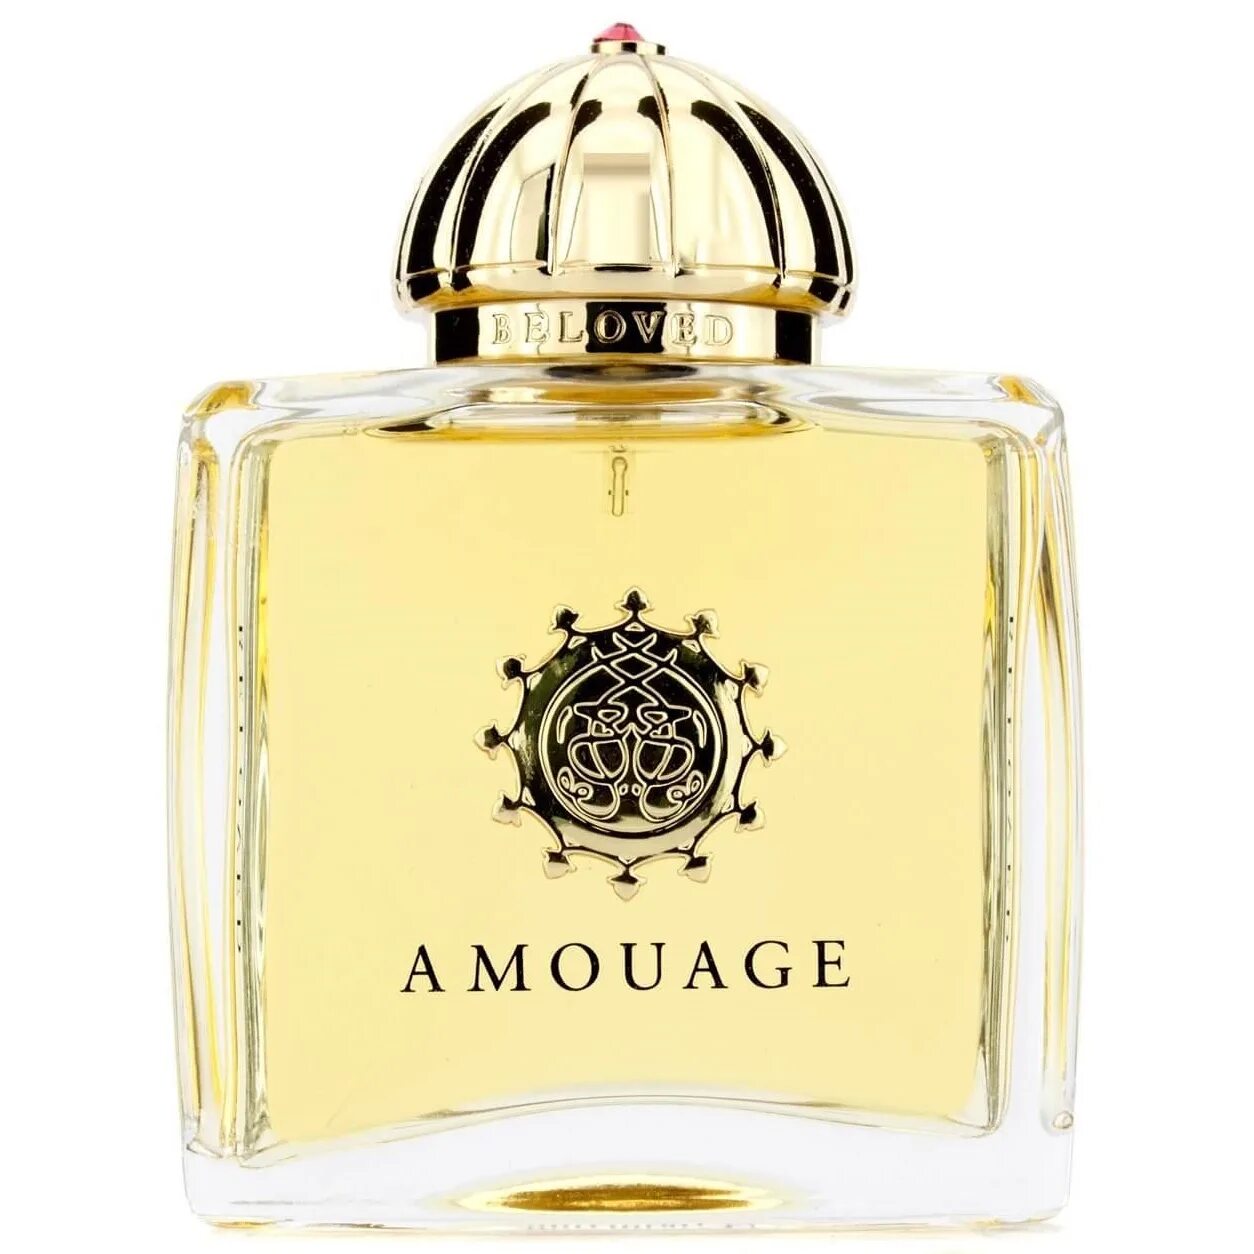 Amouage 50 ml. Amouage Perfume. Beloved Парфюм Амуаж. Amouage 50 мл. Амуаж духи купить